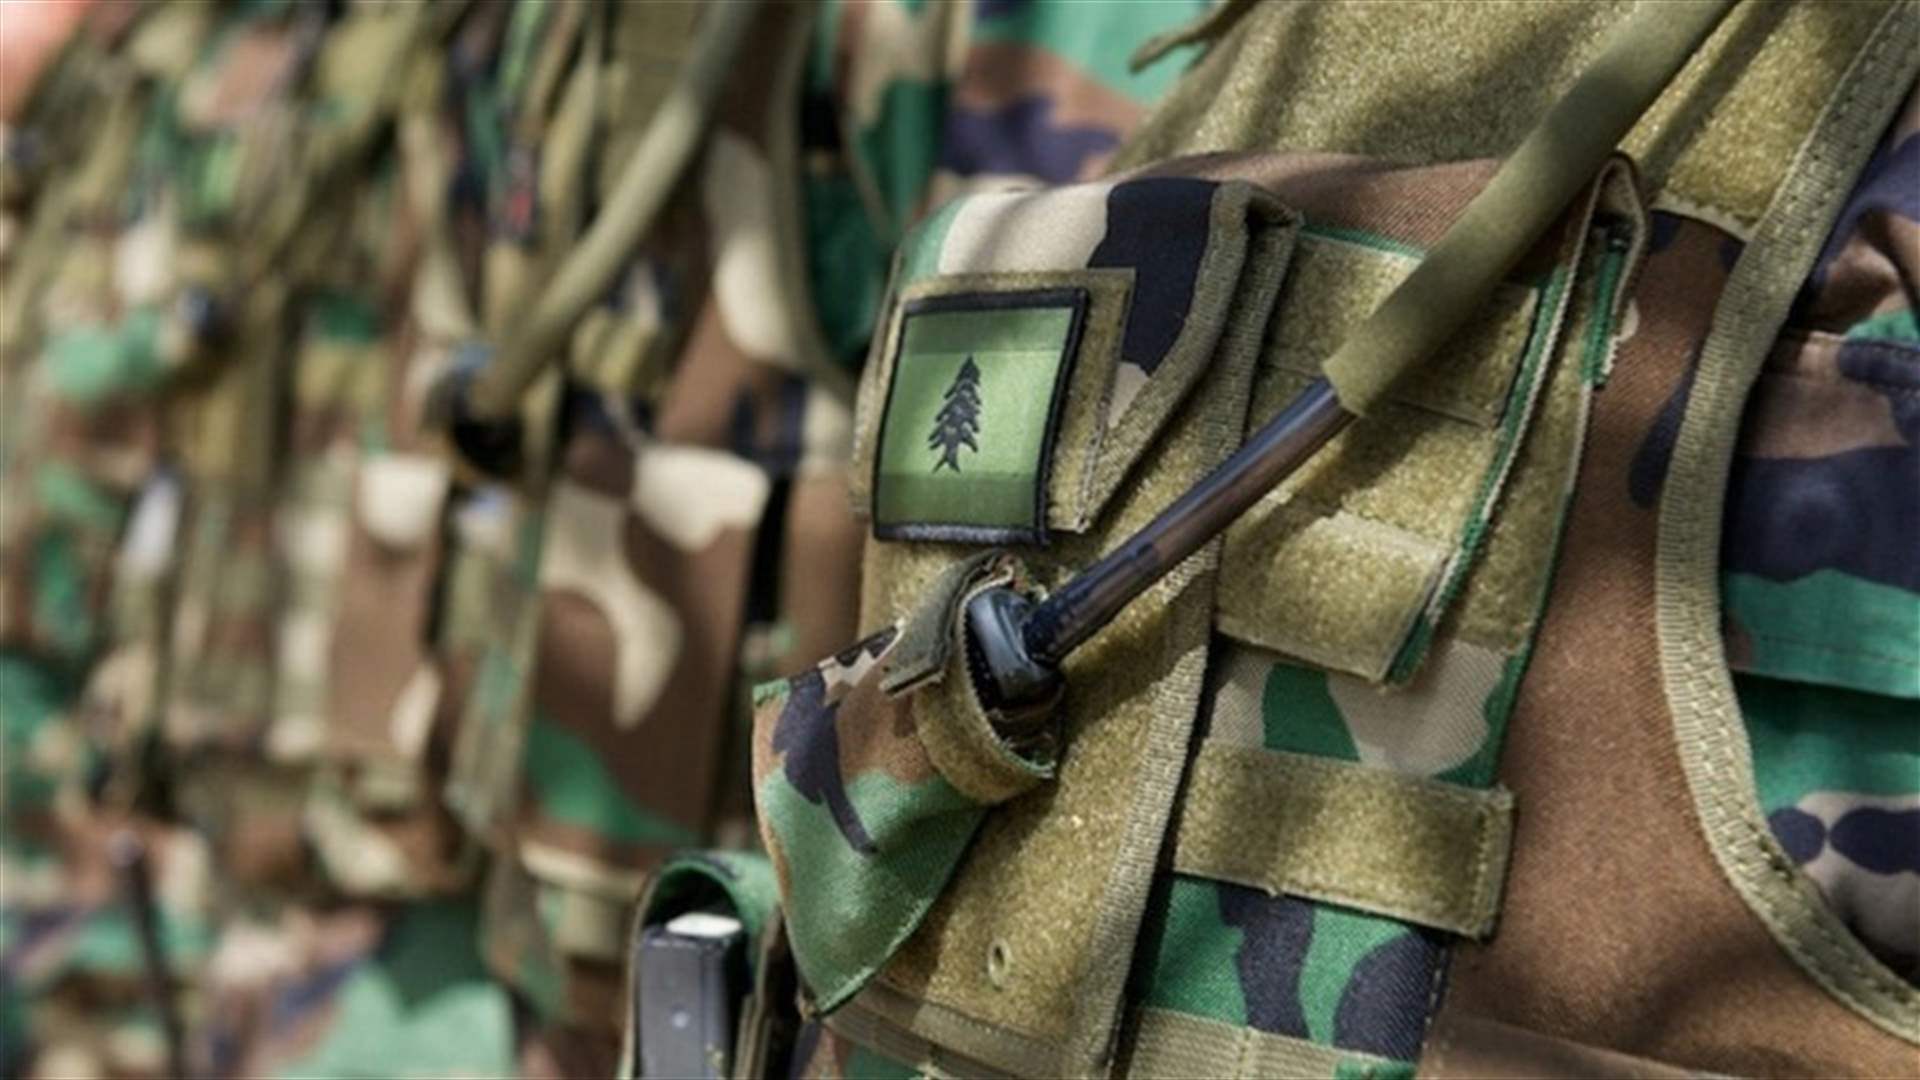 الجيش: توقيف أعضاء عصابة سلب في بلدة ببنين ومنطقتَي المنية والضنية بعد سلبهم أحد المواطنين